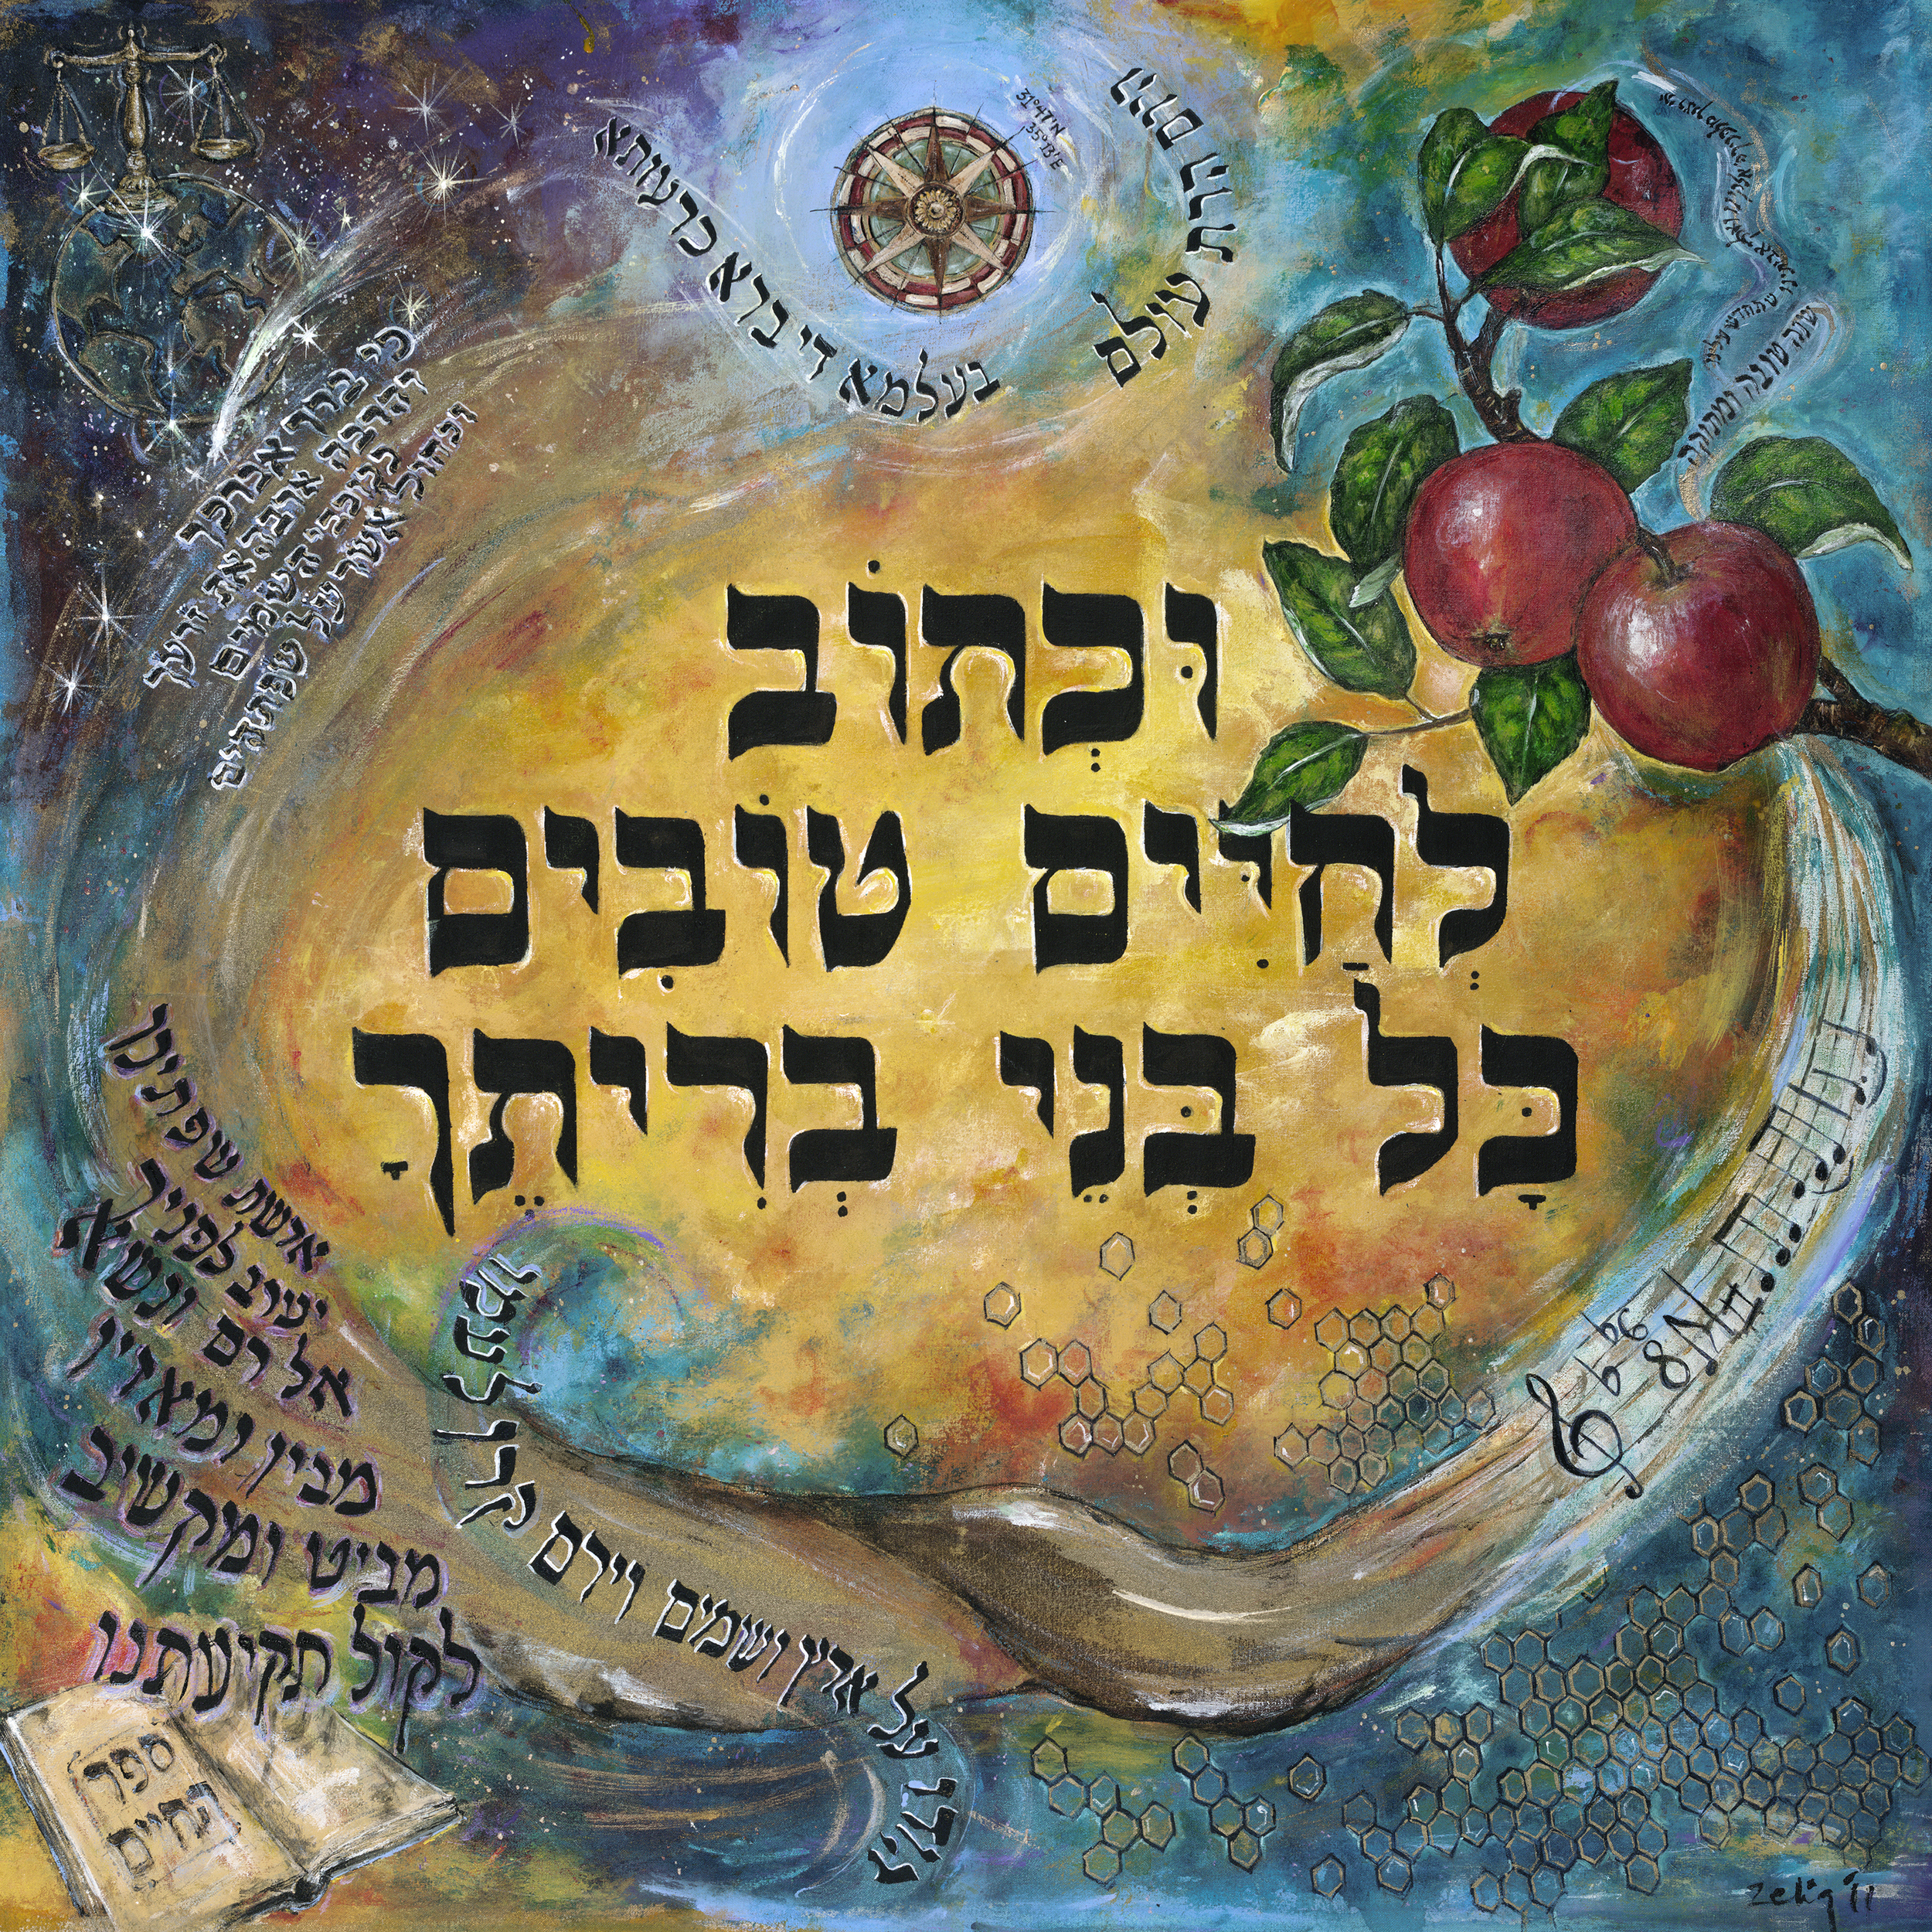 ROSH HASHANA: JEWISH NEW YEAR